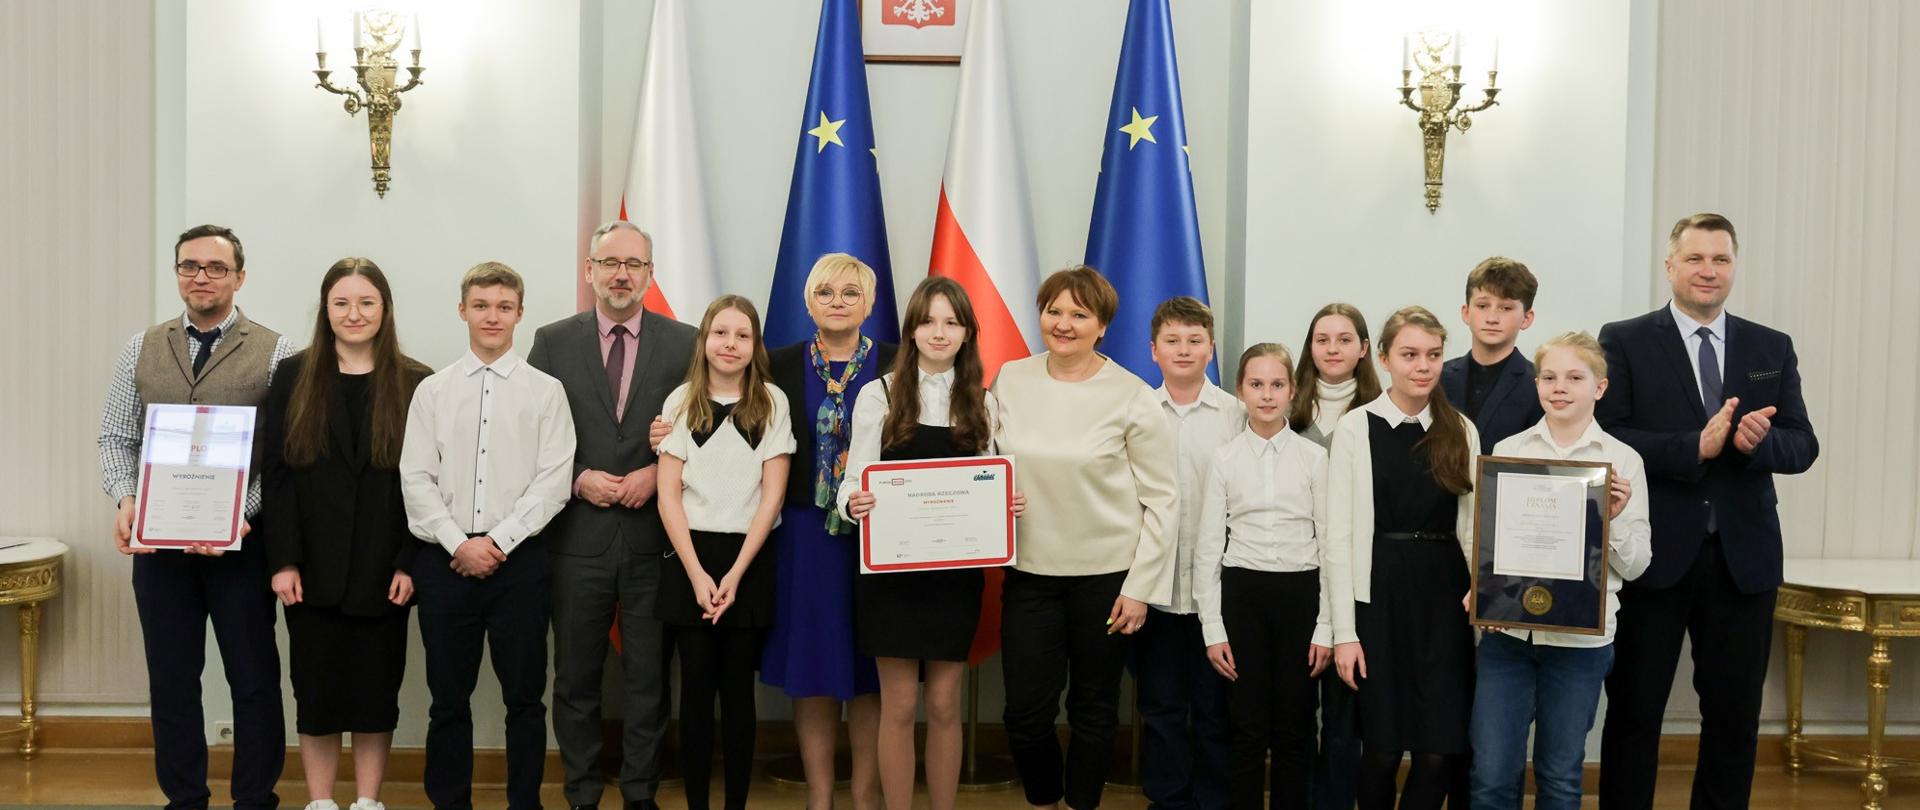 Pod białą ścianą na której wiszą ozdobne kinkiety stoi grupa ubranych na galowo młodych ludzi, troje trzyma oprawione w ramki dokumenty, za nimi flagi Polski i UE.